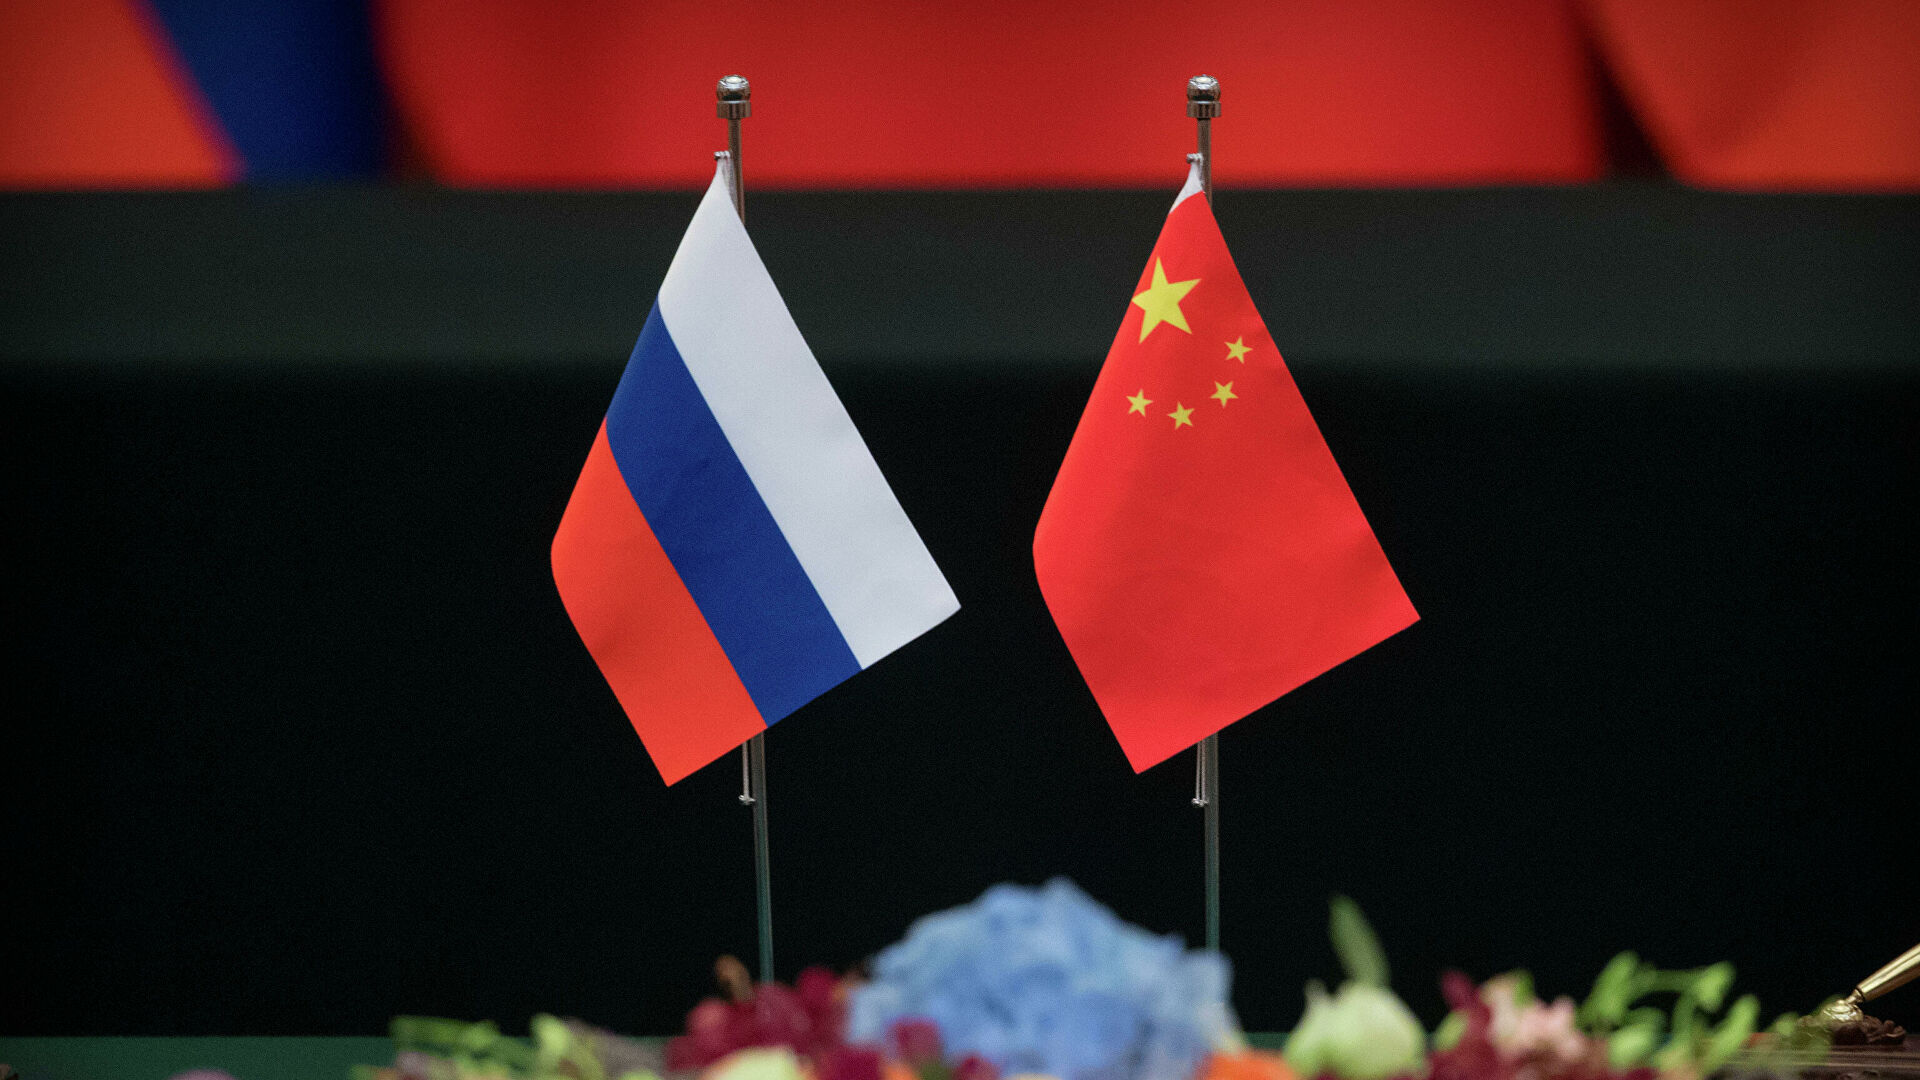 Rusiya-Çin sammiti keçiriləcək - Hazırlıq davam edir